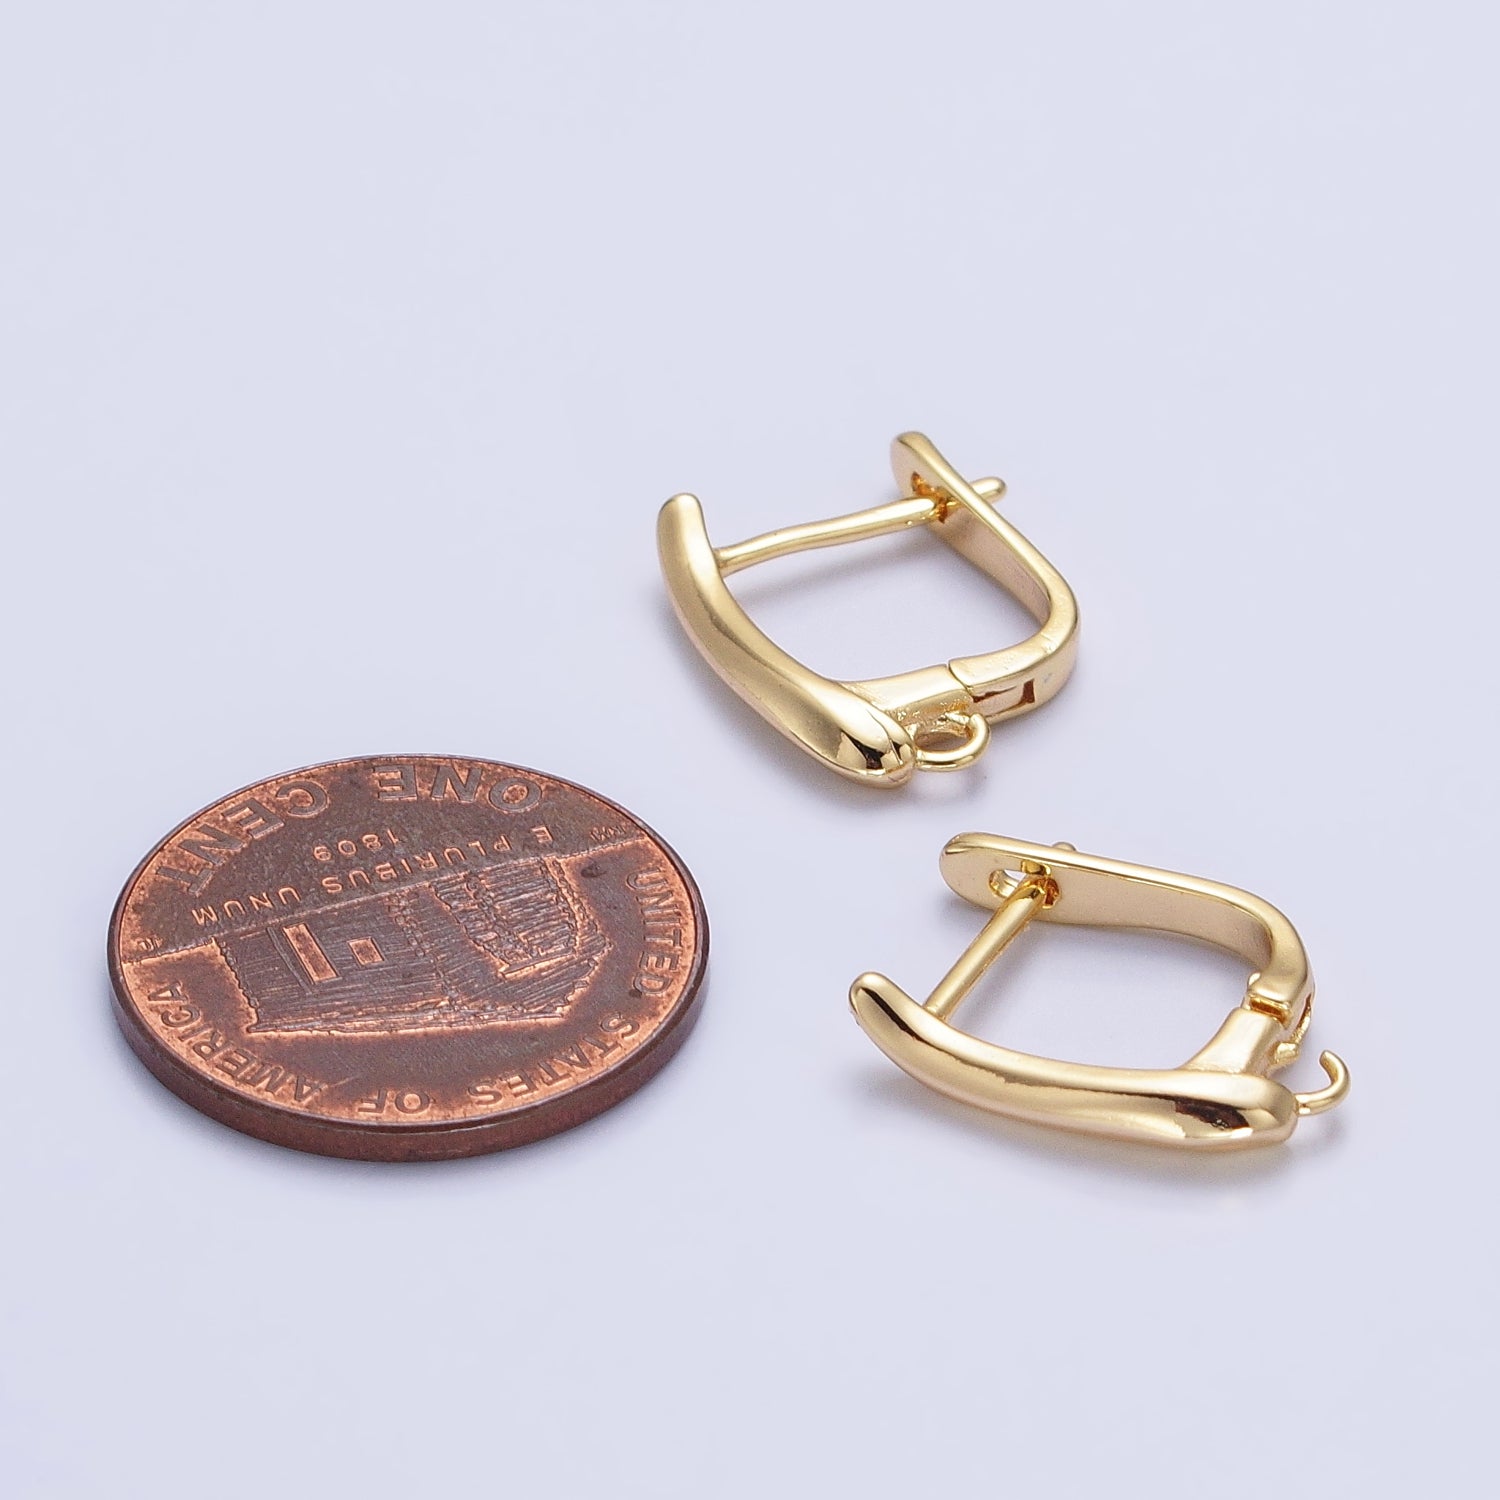 Dainty Gold Leverback Earring Silver Open Link Huggie Earring for Jewelry Making Supply Z-156 Z-157 - DLUXCA